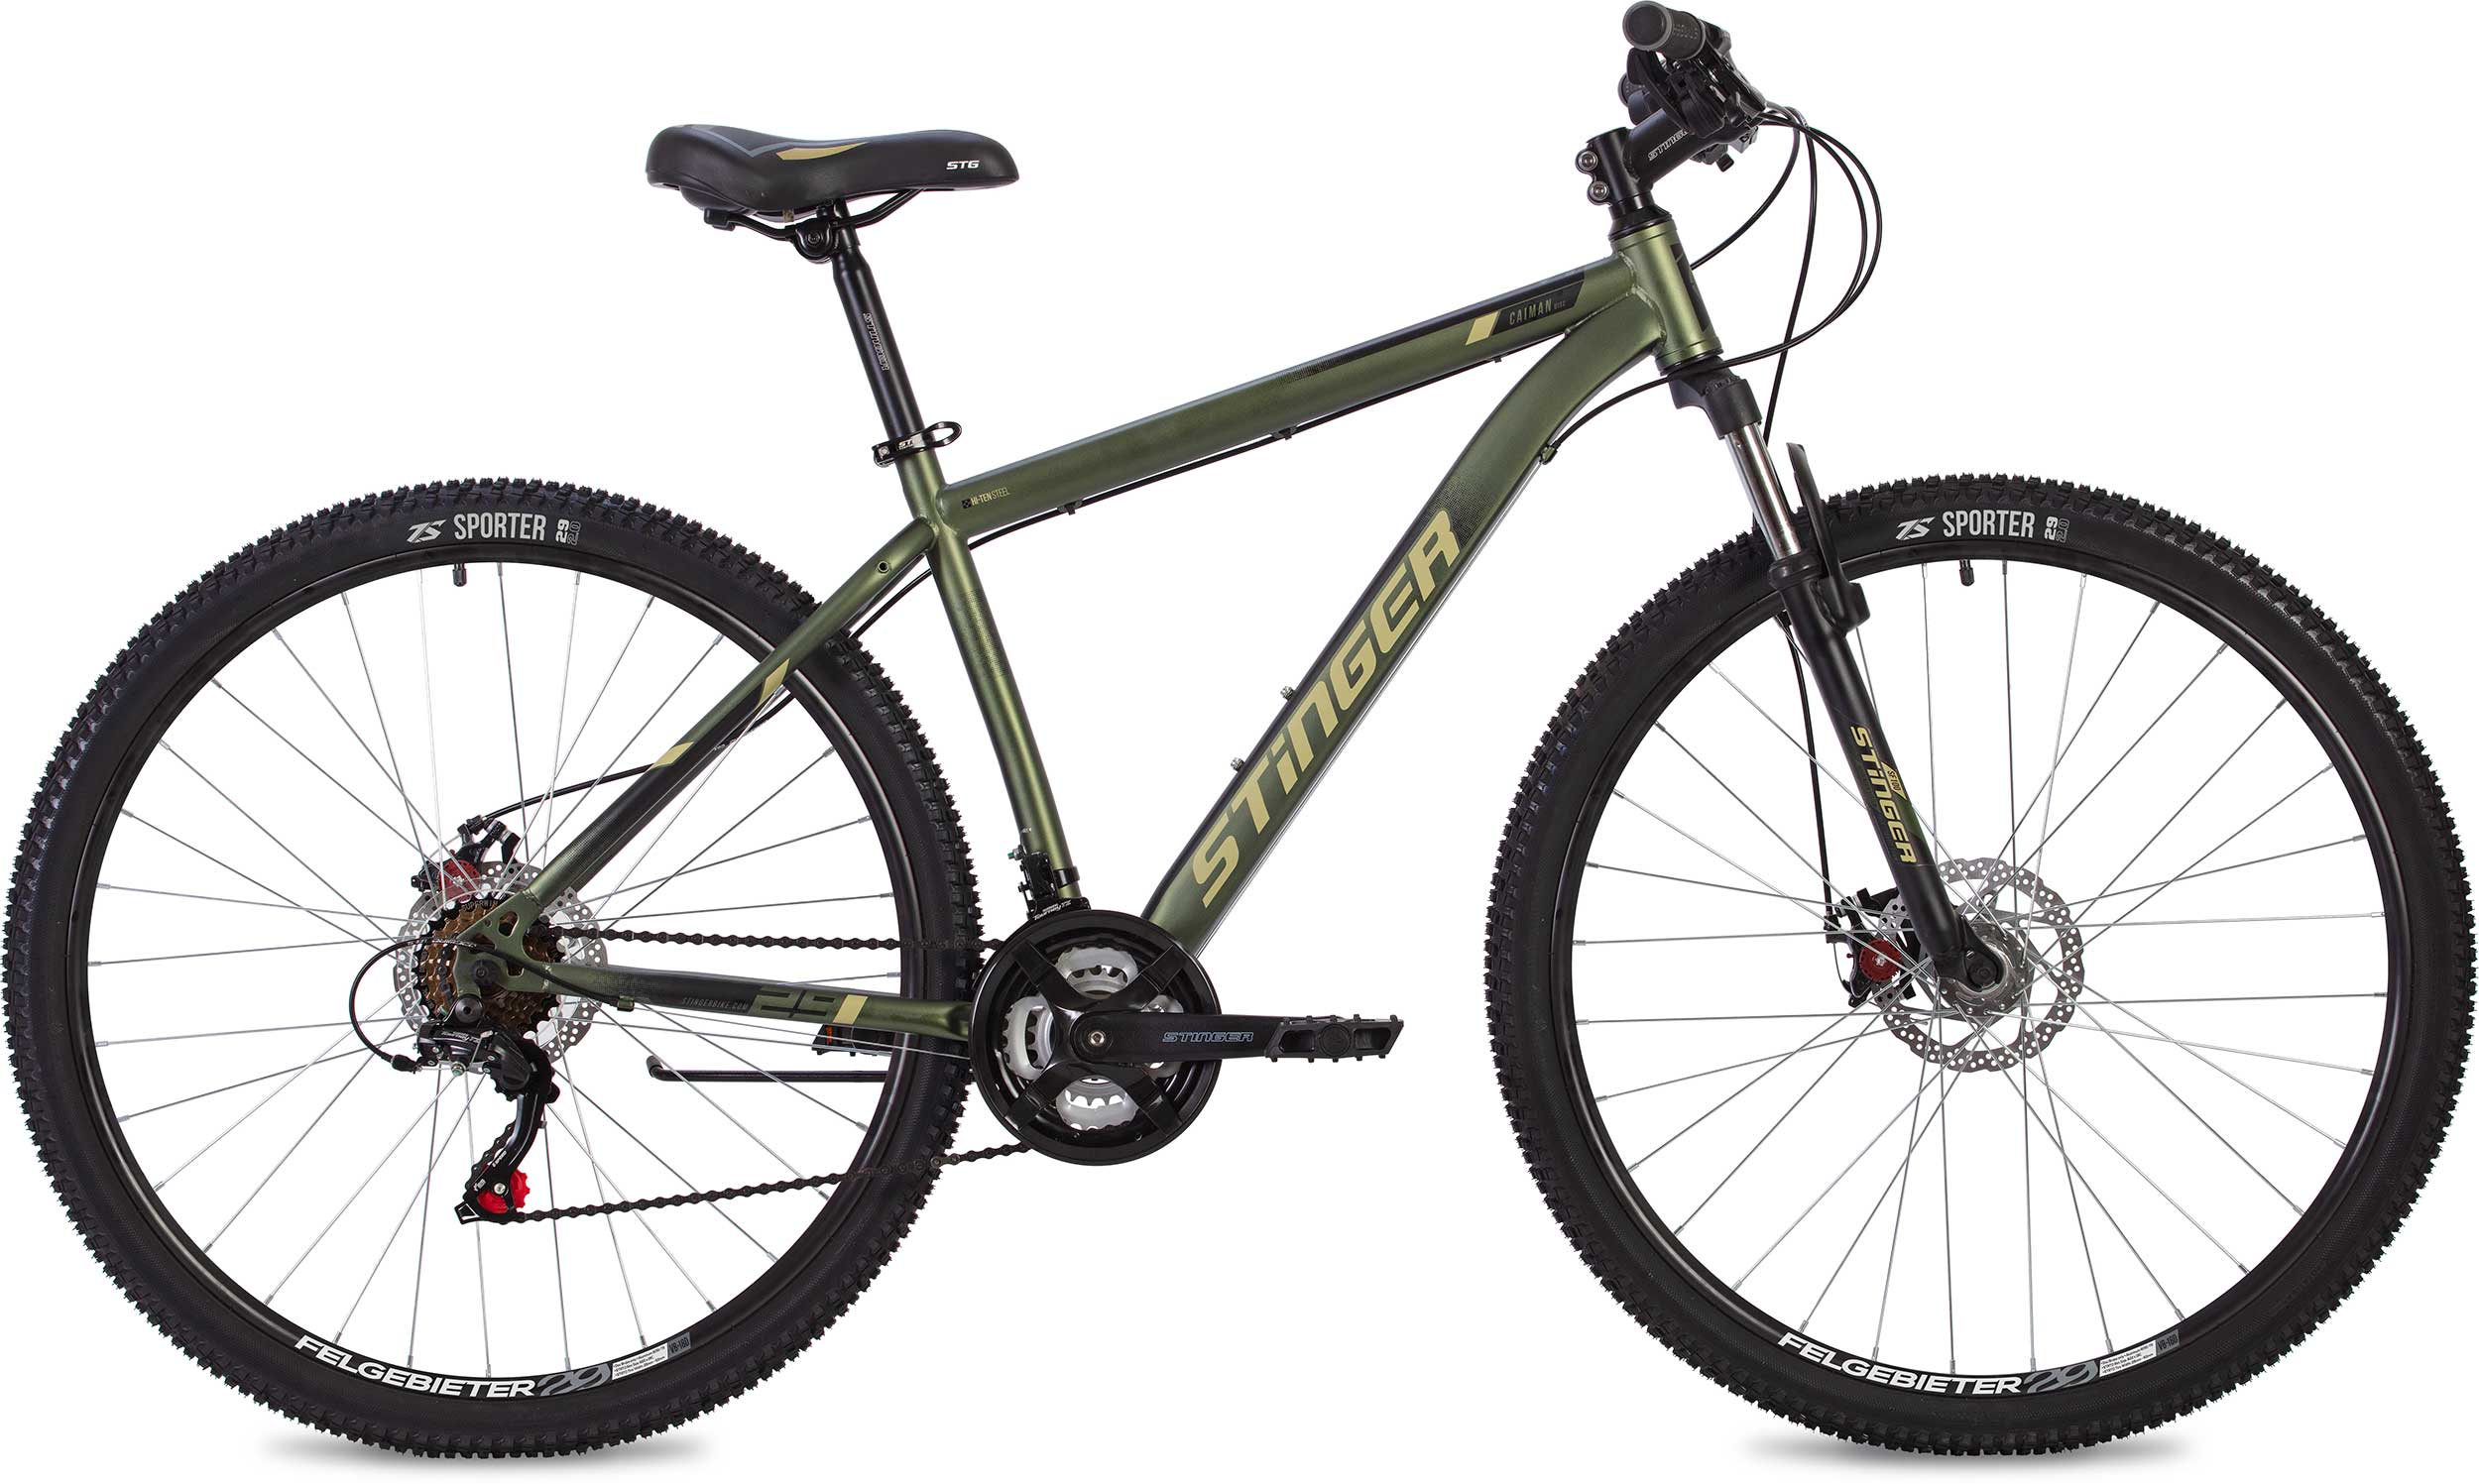  Отзывы о Горном велосипеде Stinger Caiman D 27 2020